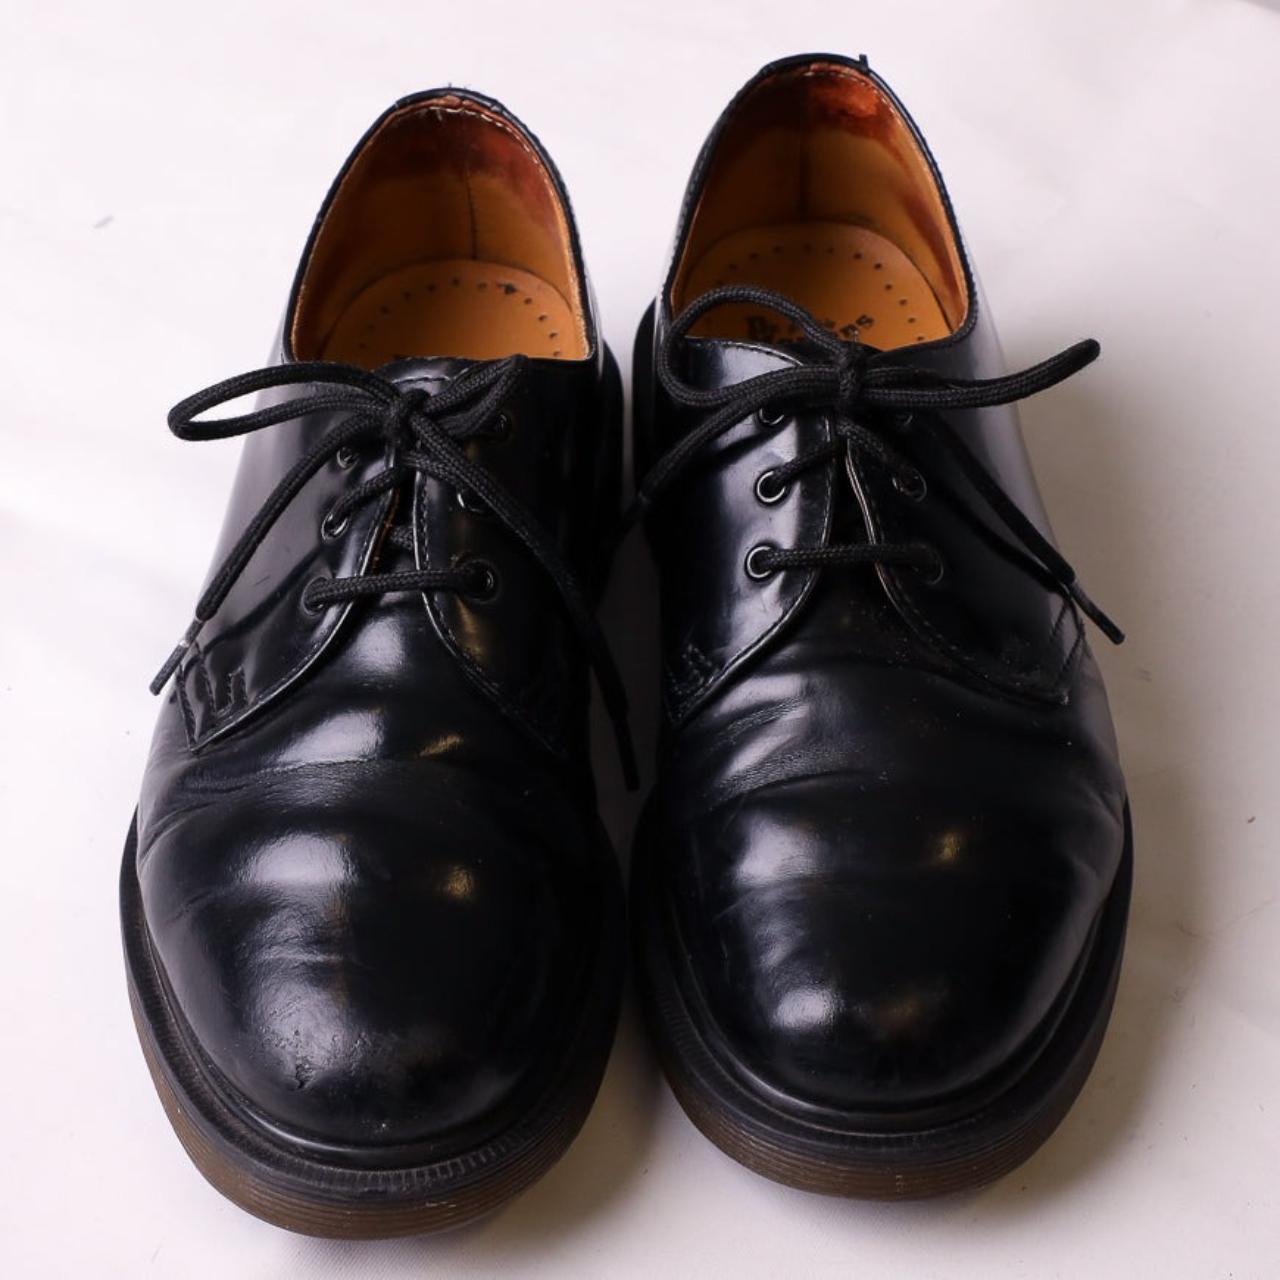 Vintage Dr Martens Leather Shoes in Black Patent•... - Depop